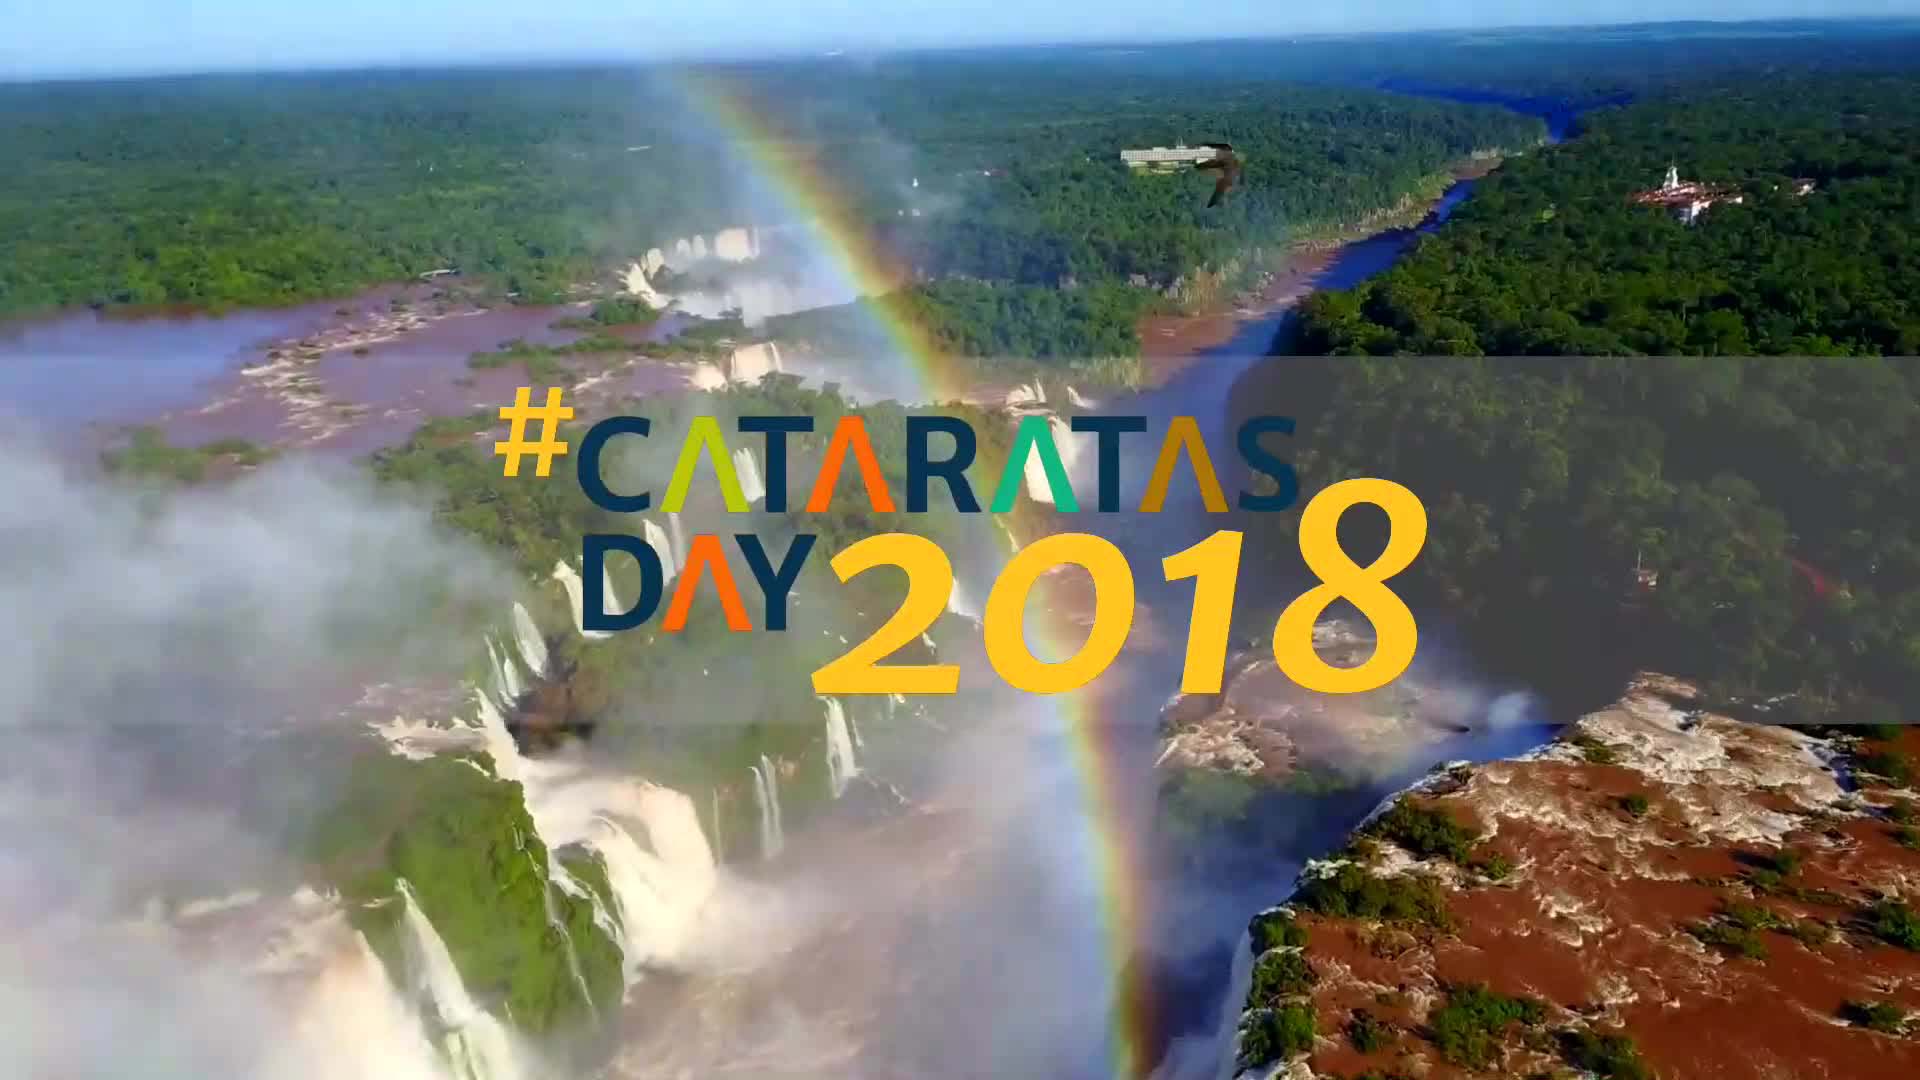 Iguazú: este domingo Cataratas Day prepara su 7mo aniversario